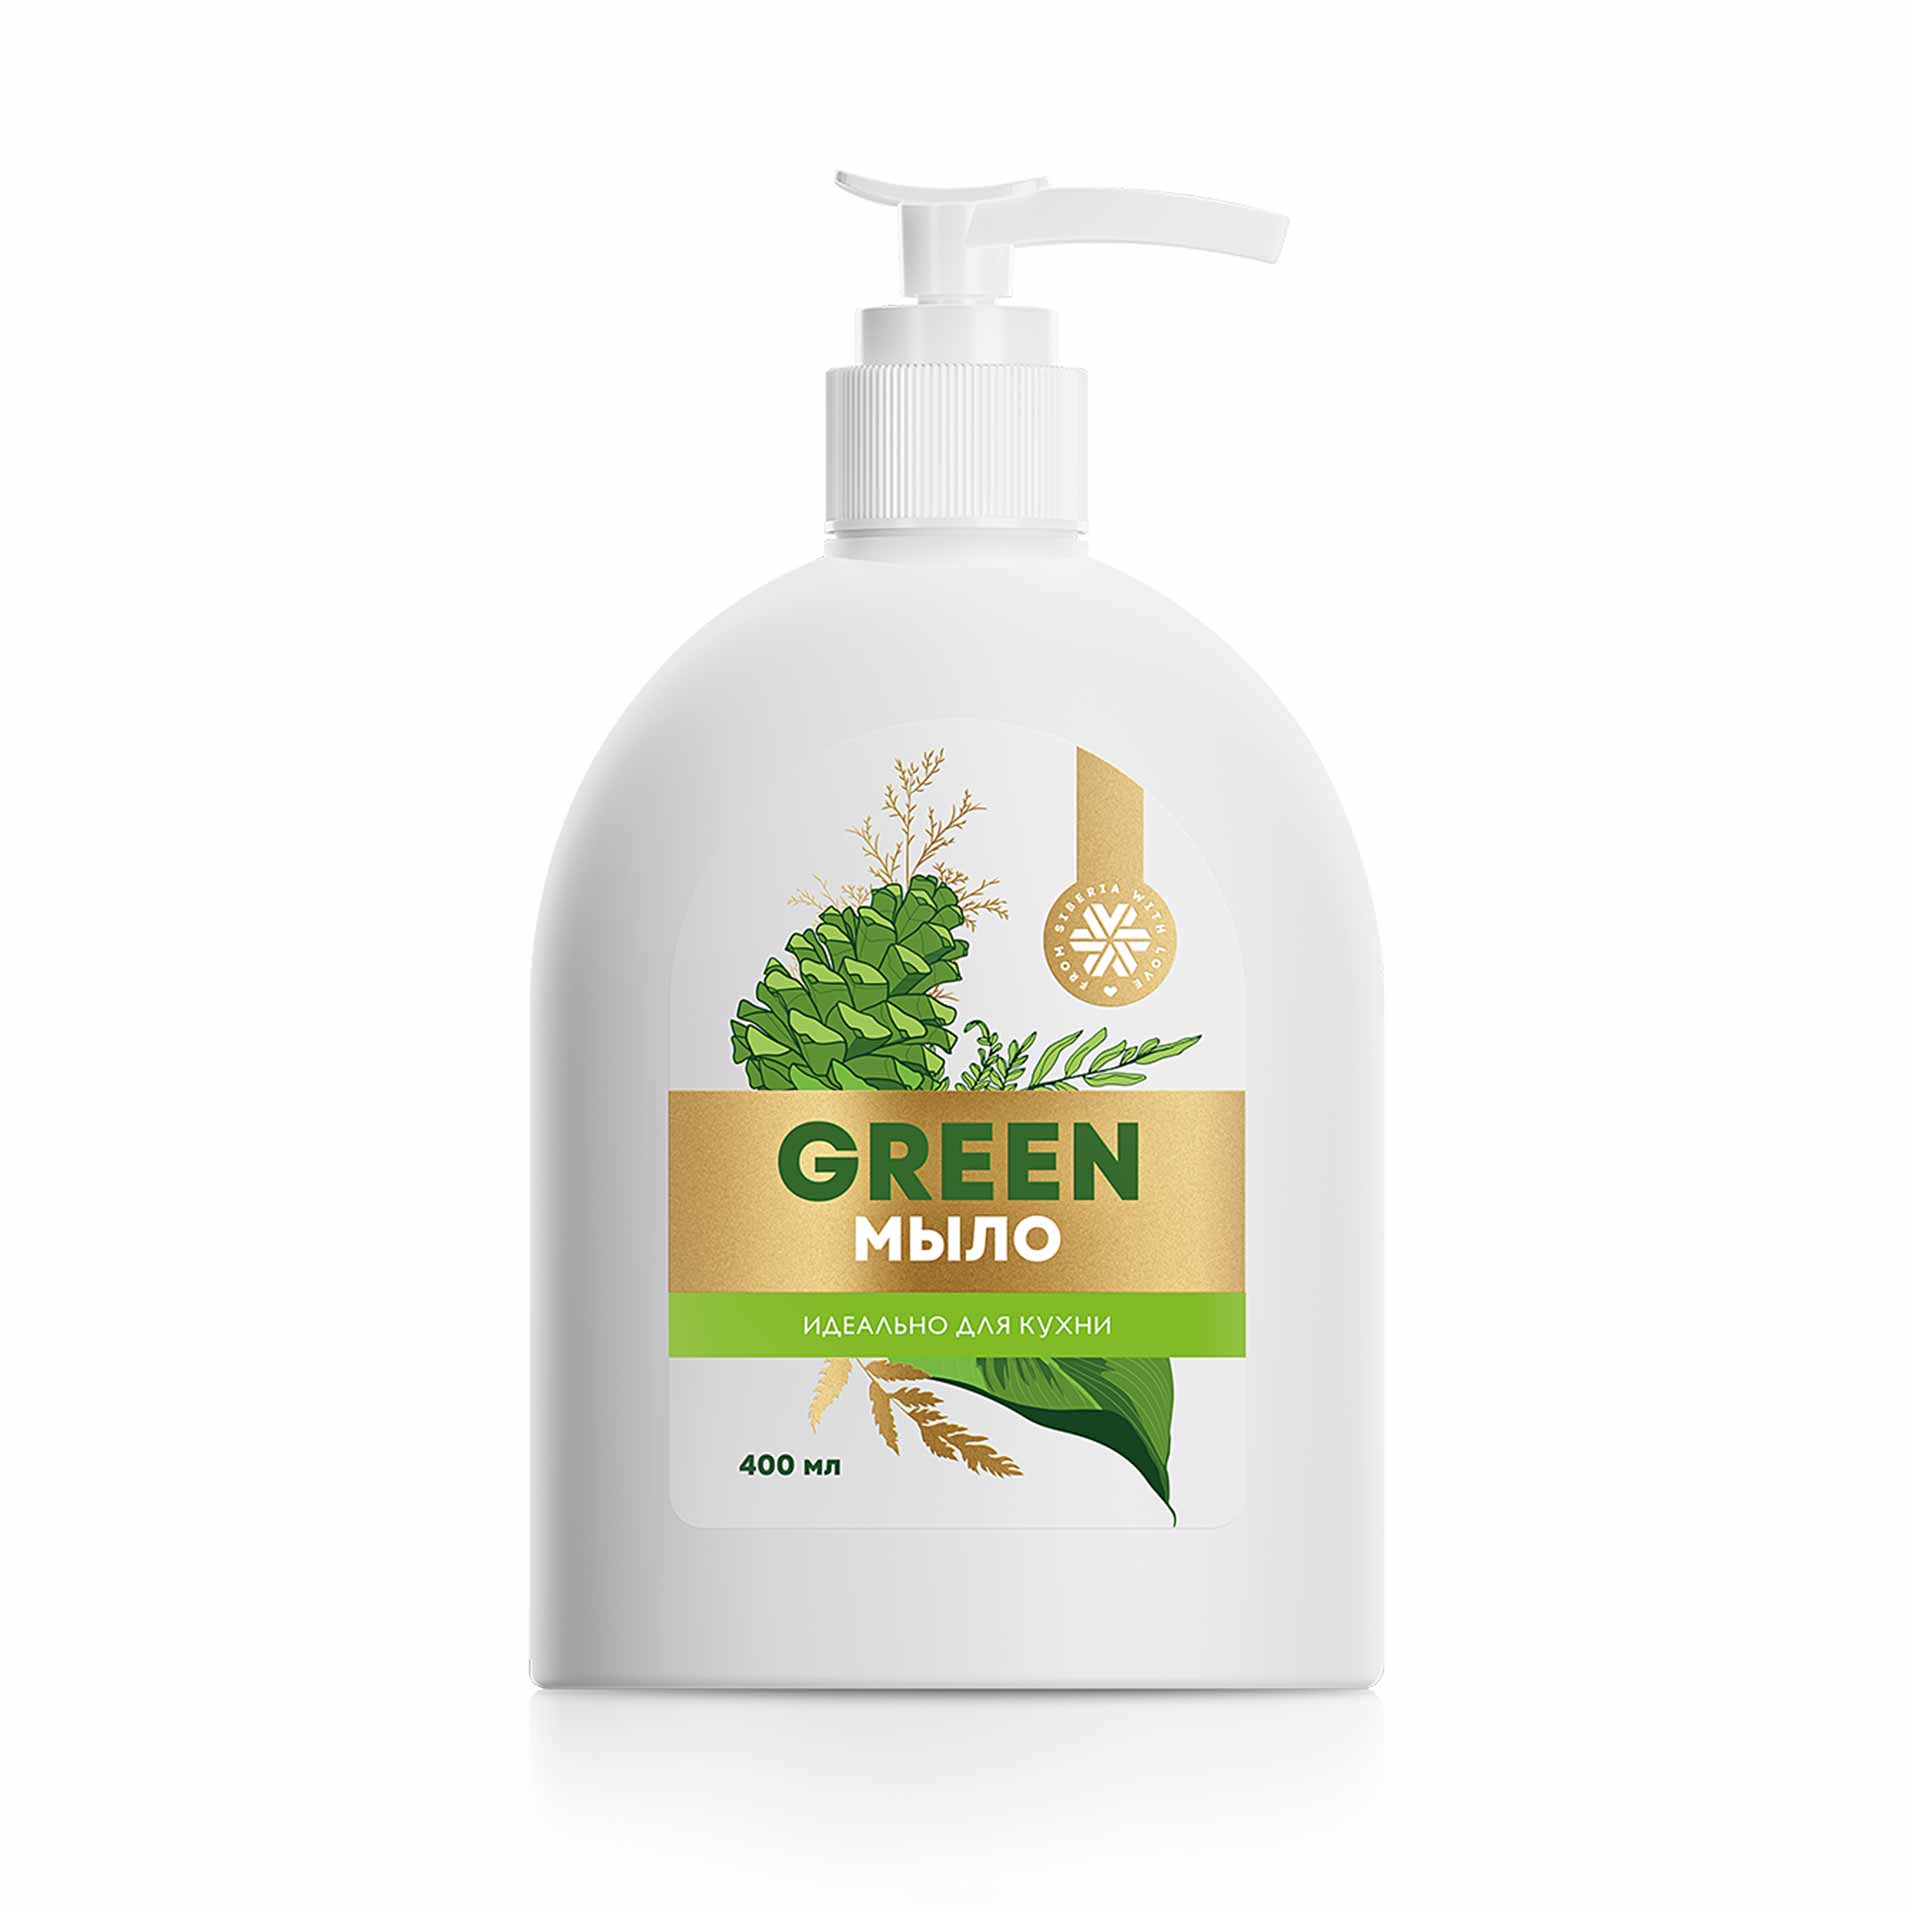 Изображение отсутствует.
			Купить GREEN-мыло для кухни Siberian Herbs //  // 